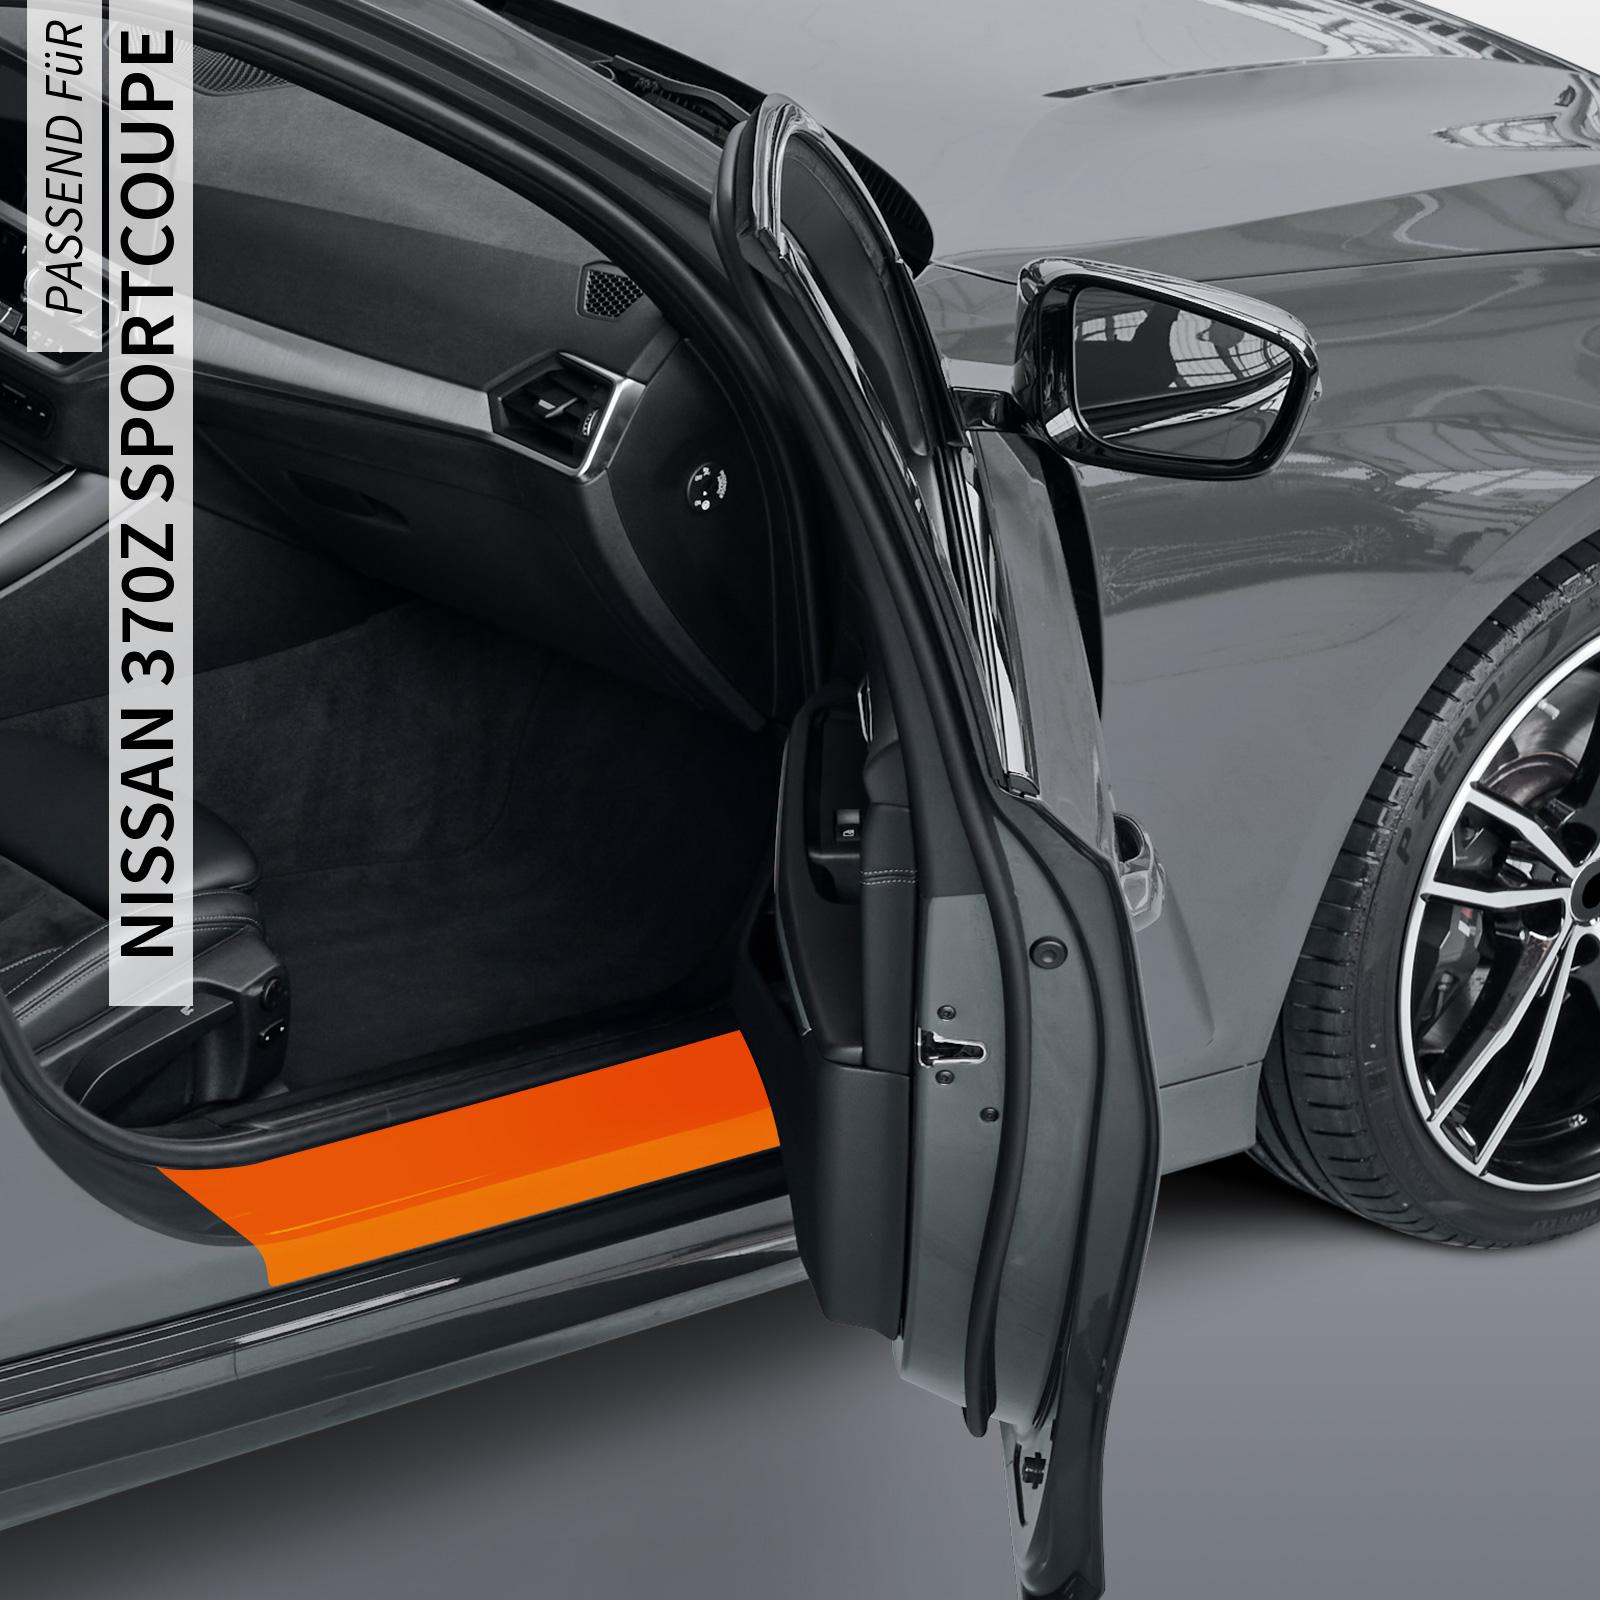 Einstiegsleistenschutzfolie - Transparent Glatt Hochglänzend 150 µm stark - 6-teilig für 3-Türer  für Nissan 370z Sportcoupe BJ 2008-2013